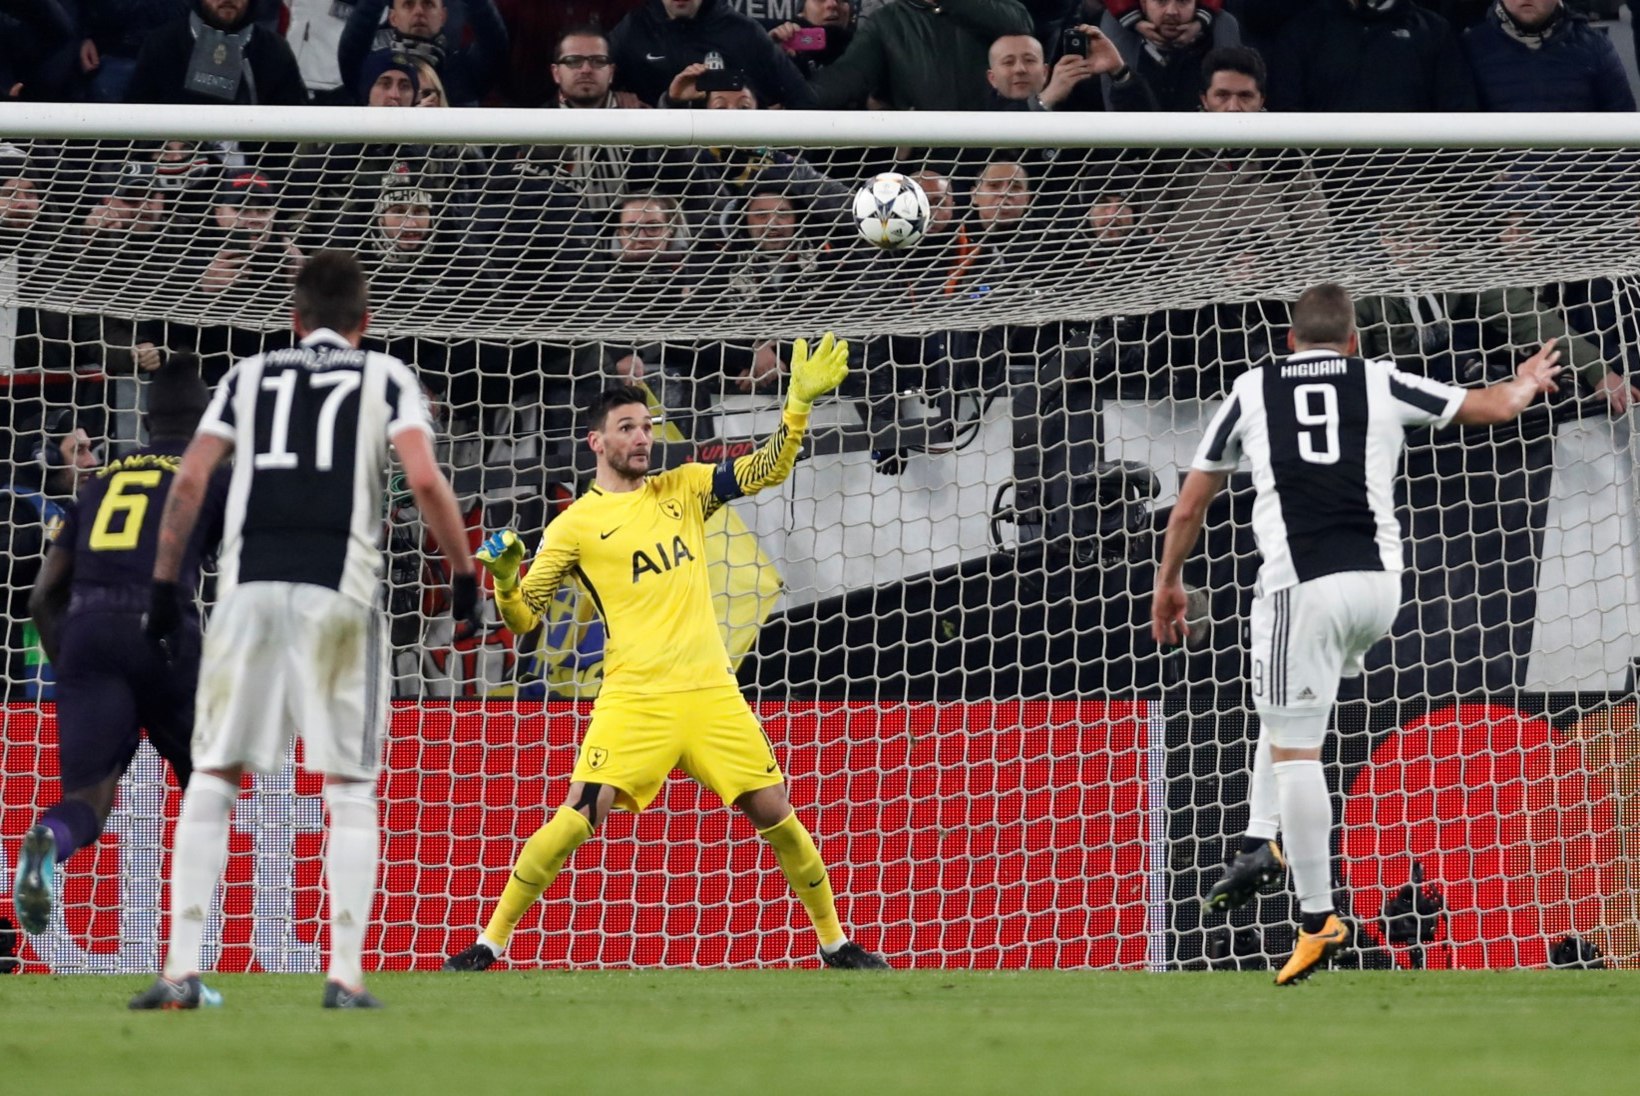 FOTOD JA VIDEOD | Tottenham mängis end raskest seisust Juventuse vastu favoriidiks, Manchester City näitas võimu